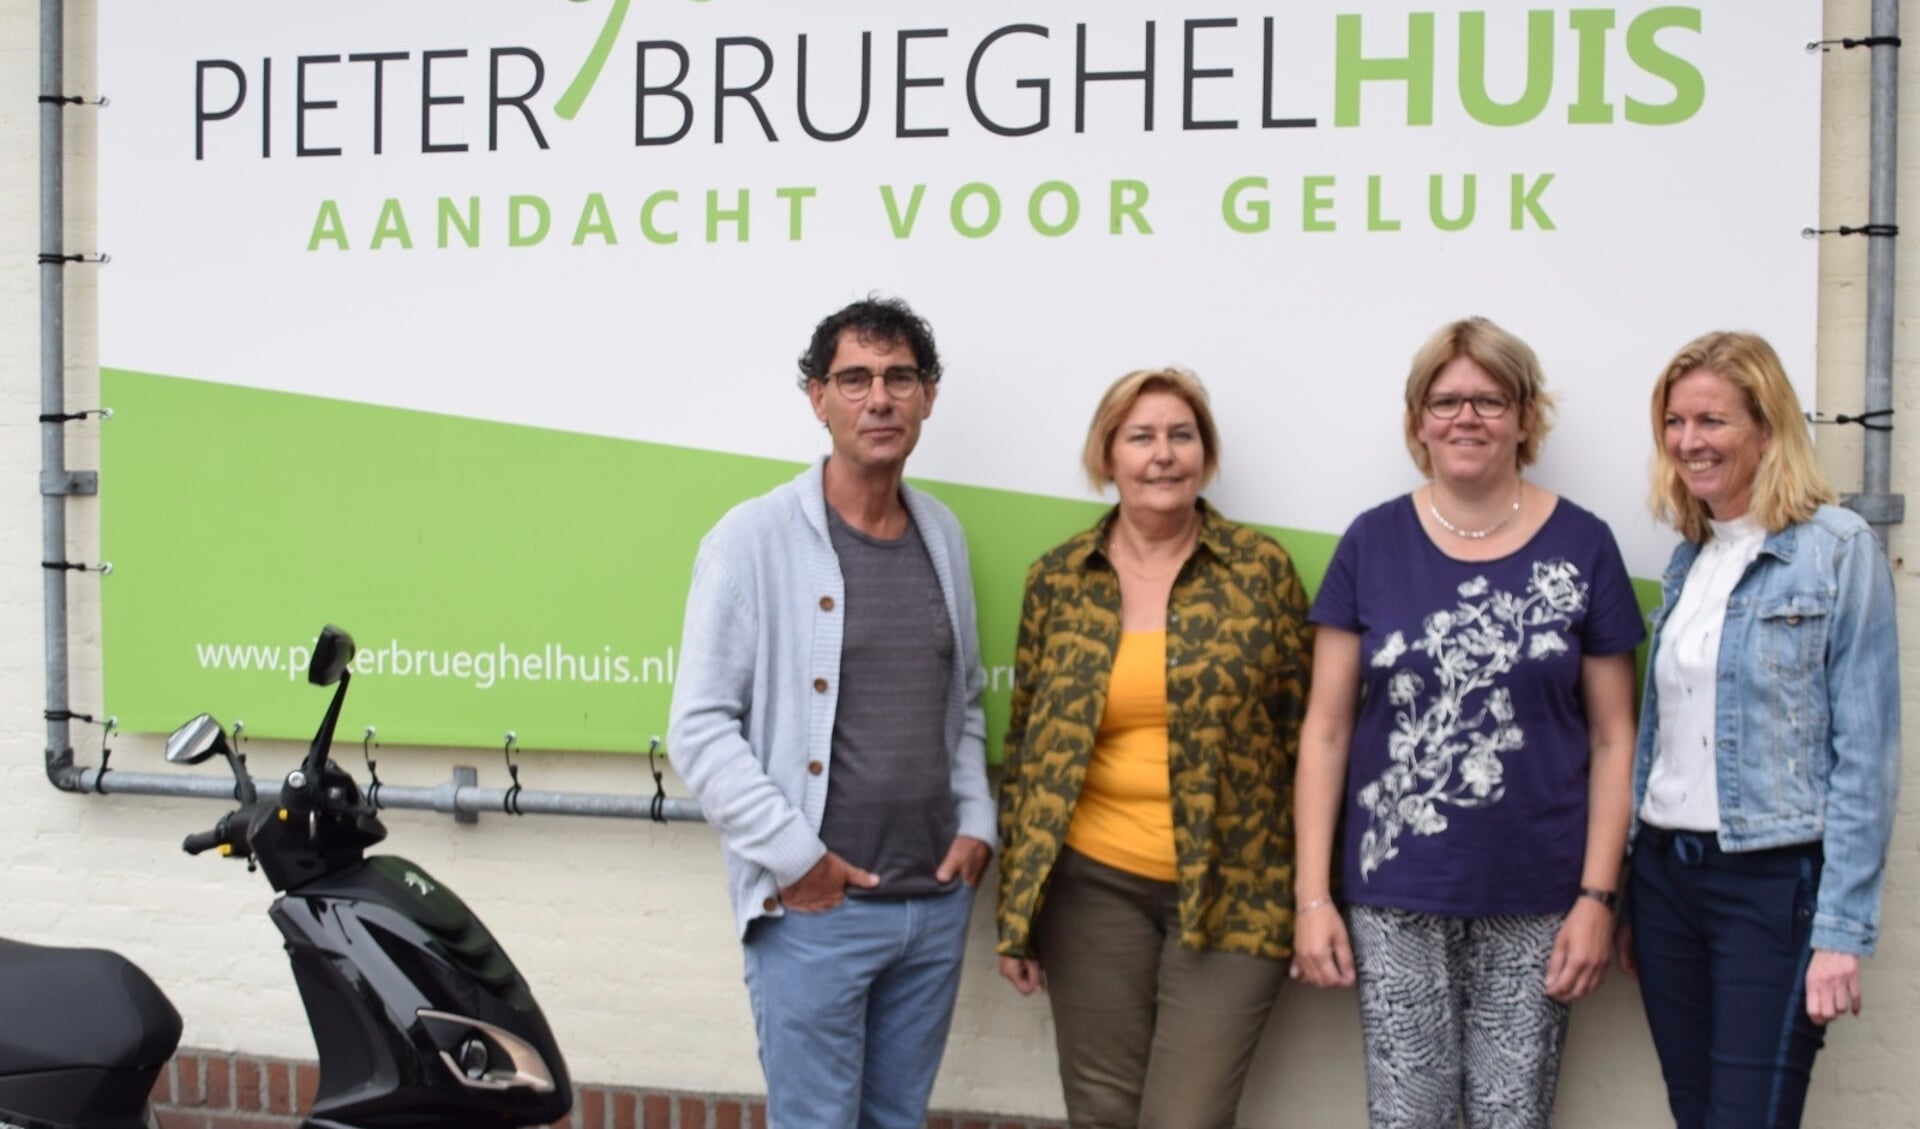 De initiatiefnemers voor het Autismecafé in Veghel. Van links naar rechts: Herman Vissers (MEE),  Marjon van Herpen (ONS welzijn),  Dorien van Rooij (ervaringsdeskundige) en Karin Cornelissen (PieterBrueghelHuis) (Foto: W van der Lubbe).